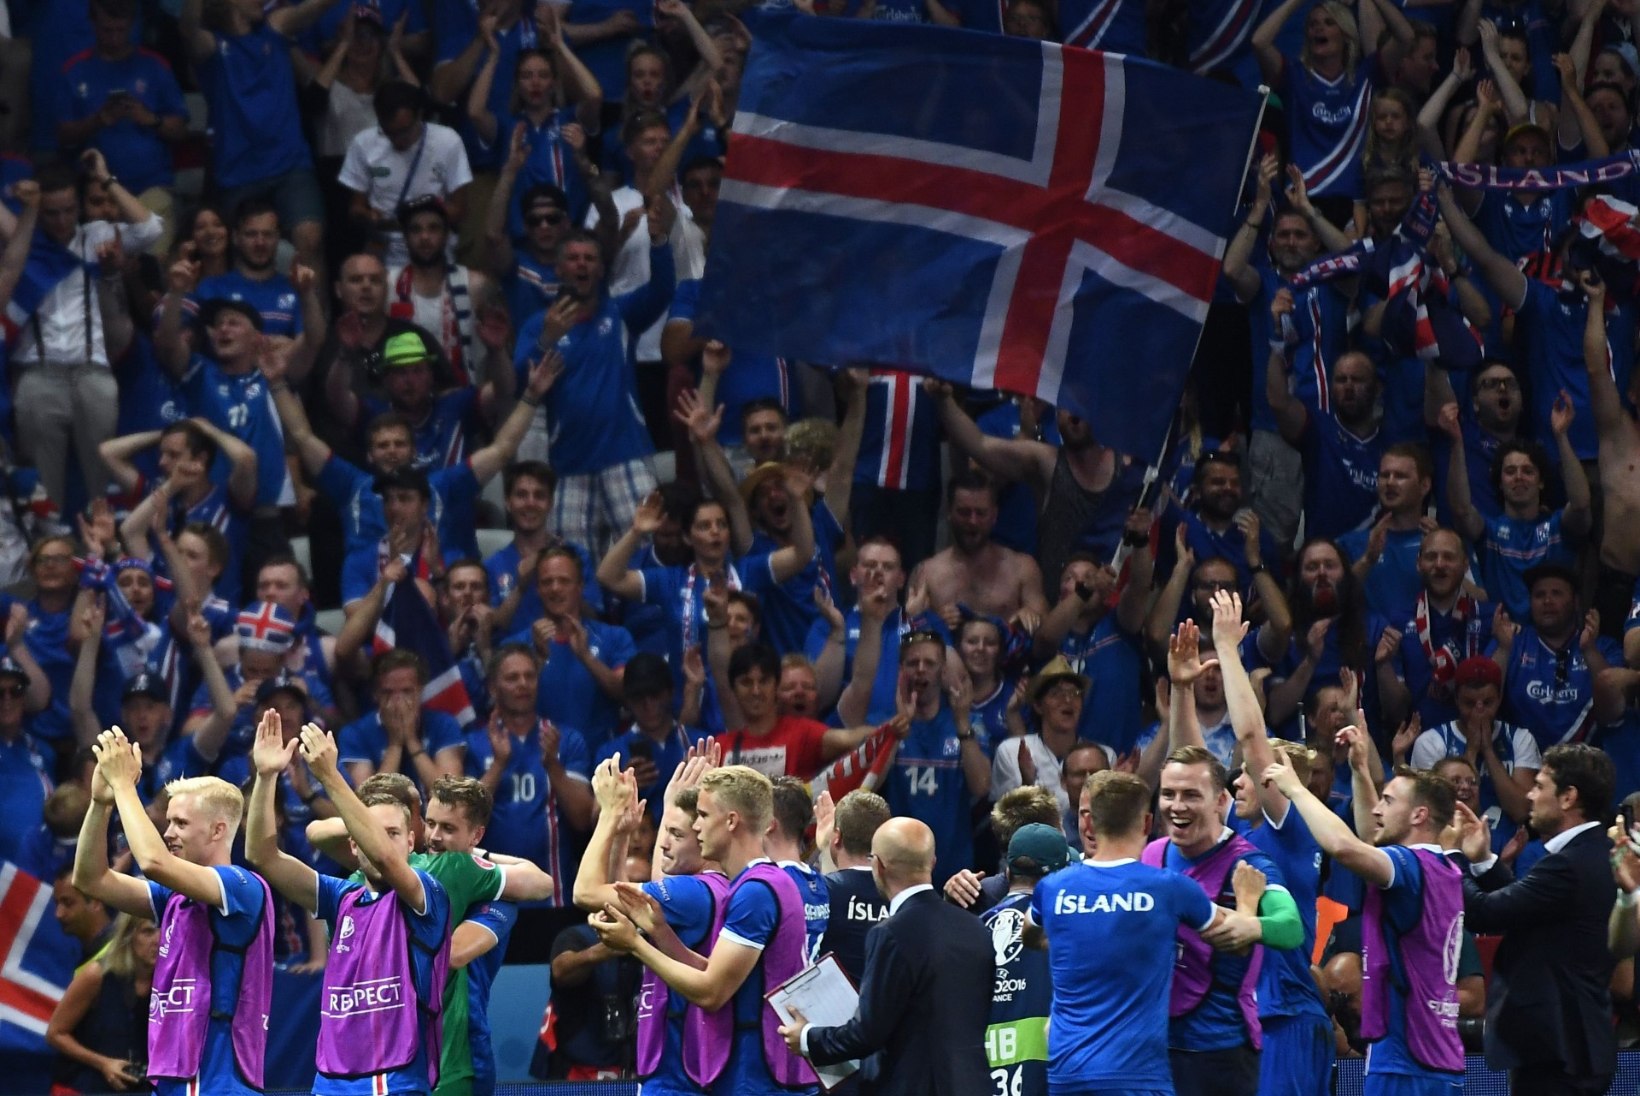 MEEST SÕNAST: Olümpiavõitja andis Islandi EM-tiitli nimel vahva lubaduse